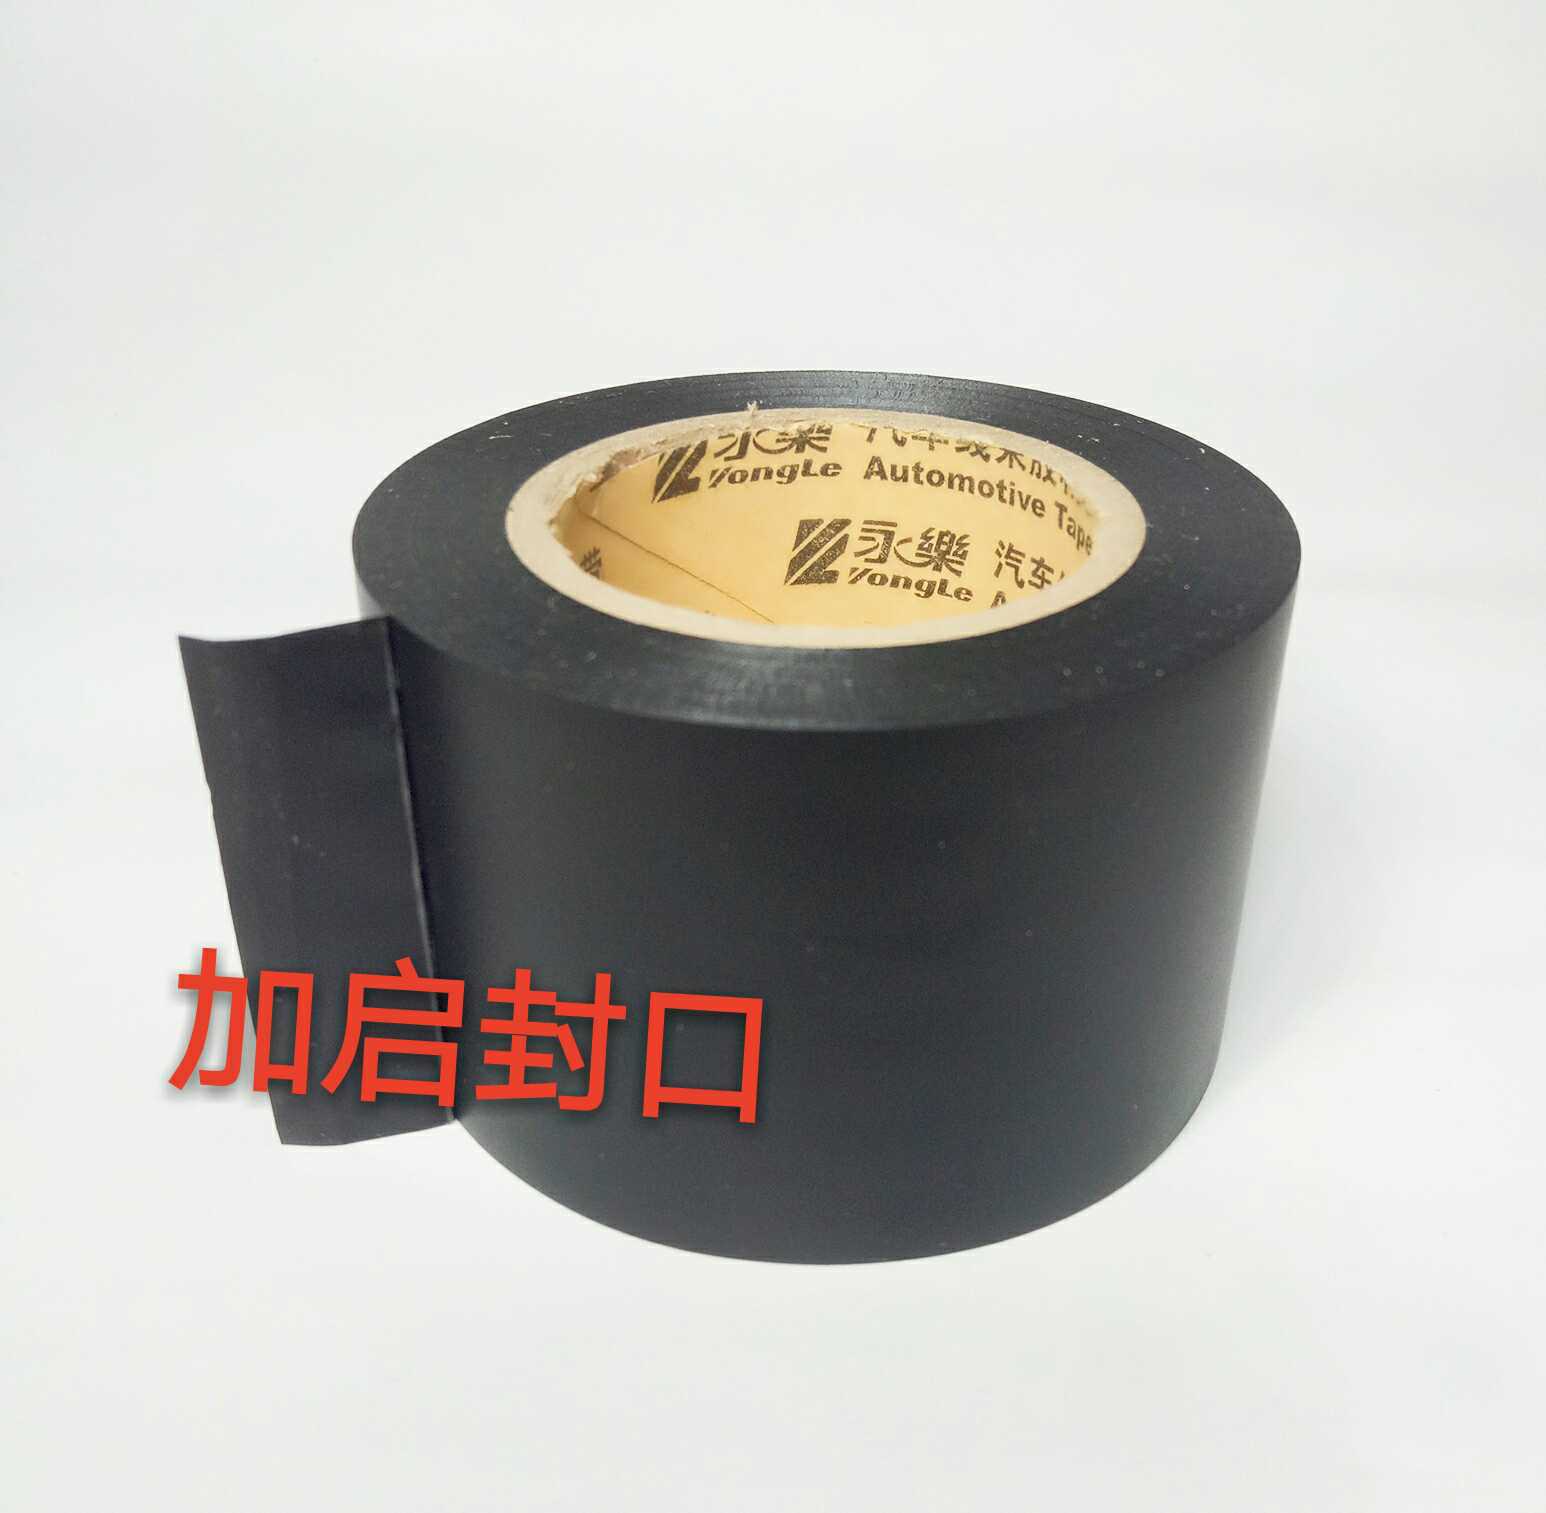 Dây đeo dòng Yongle với băng keo chống cháy thân thiện với môi trường Băng không thấm nước Băng rộng 40mm Băng keo điện Băng cách nhiệt 20 băng keo cách điện